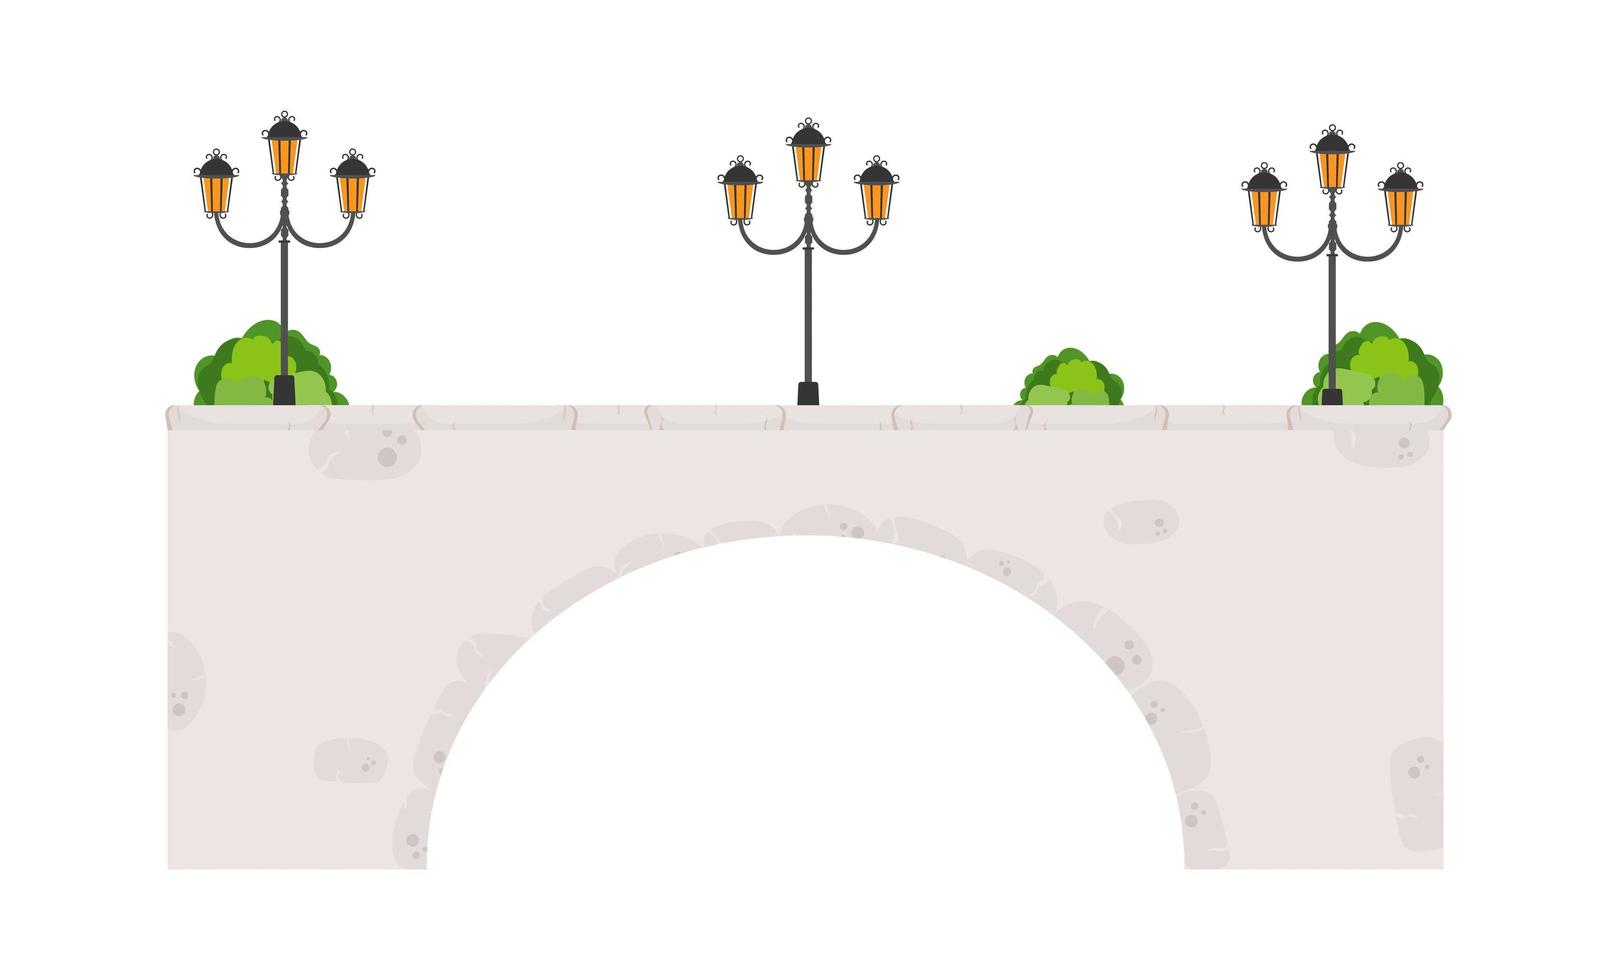 stenen brug voorraad vectorillustratie geïsoleerd op een witte achtergrond. infographics, spelfoto. vector